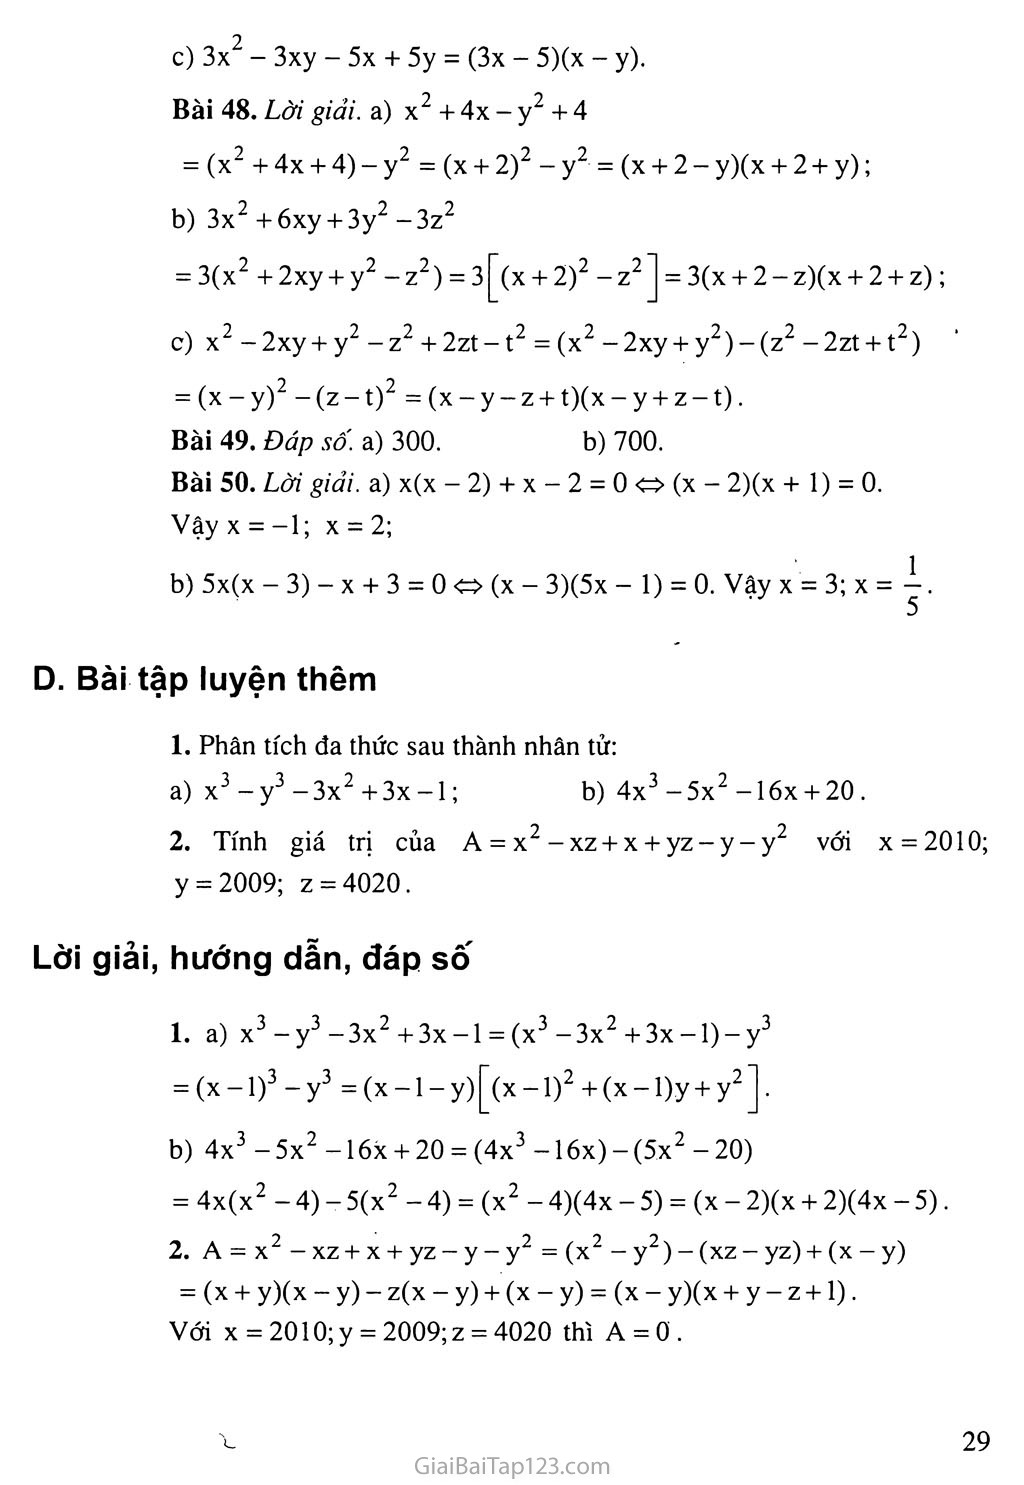 5. Ví dụ 1: Phân tích đa thức x^2 + y^2 - z^2 + 2xy - 2z - 1 thành nhân tử bằng phương pháp nhóm hạng tử.